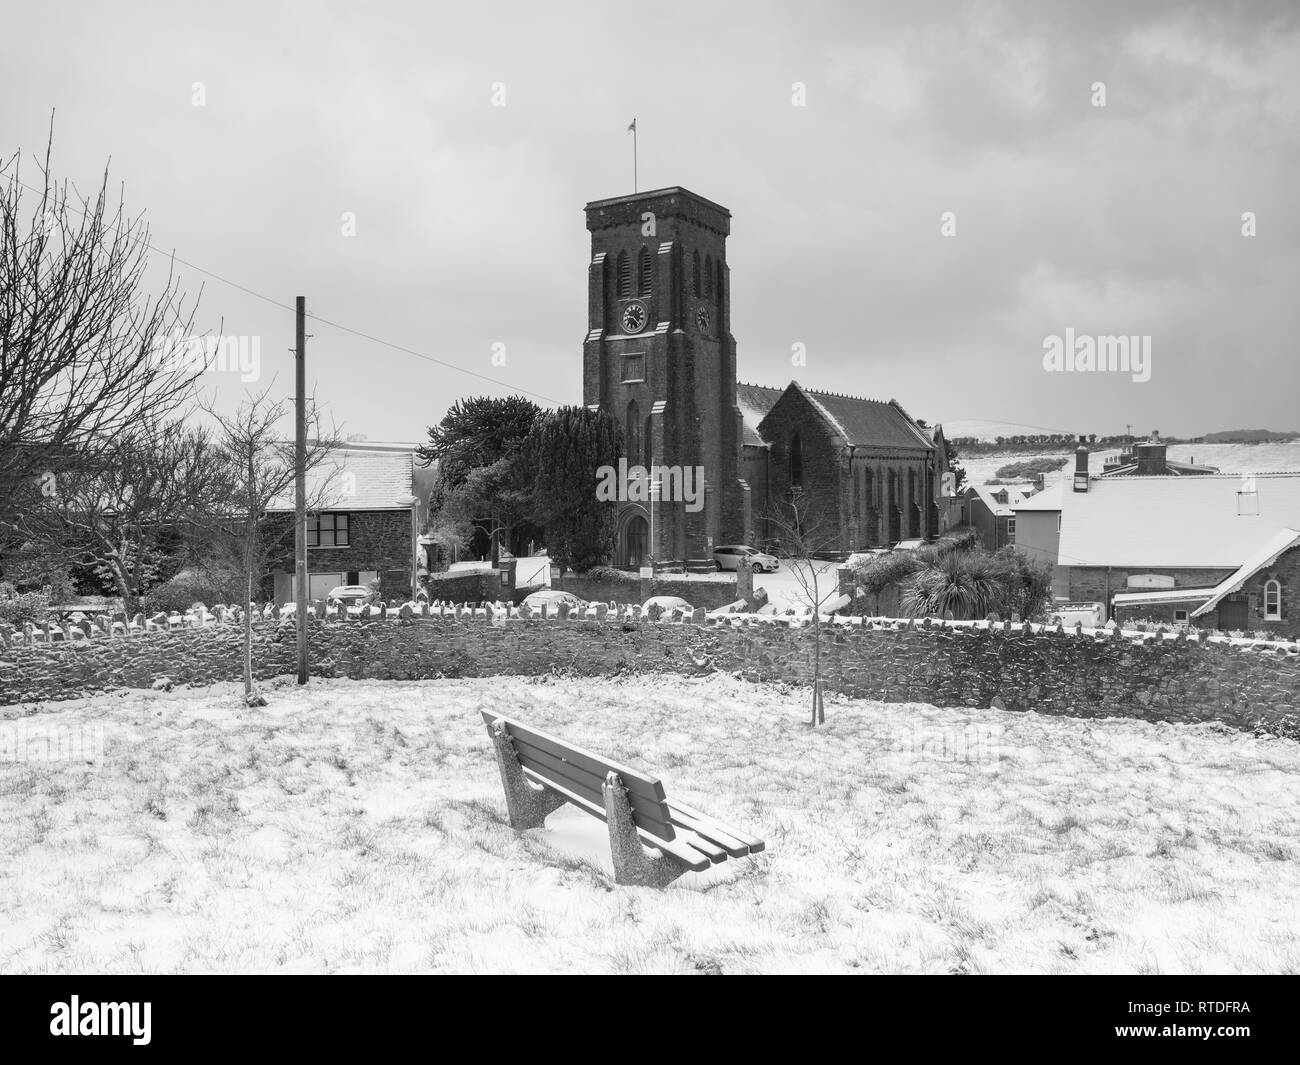 Eine verschneite Szene von Salcombe Dreifaltigkeit Kirche nach dem Tier aus dem Osten South Devon getroffen. Salcombe wurde dann durch Sturm Emma getroffen. Stockfoto